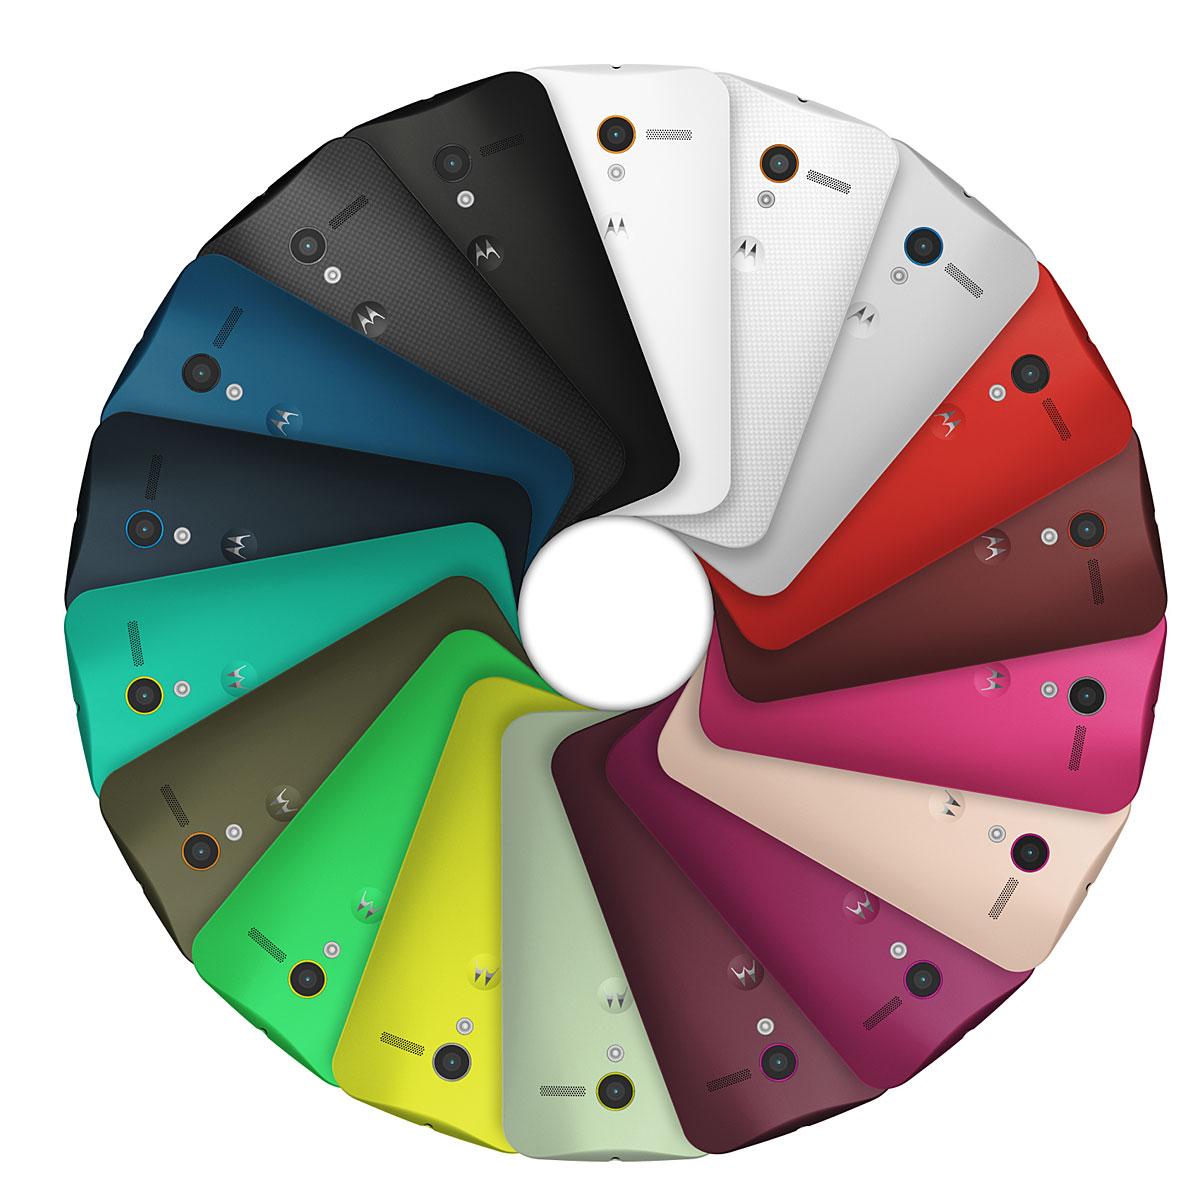 Motorola Moto X en diferentes colores